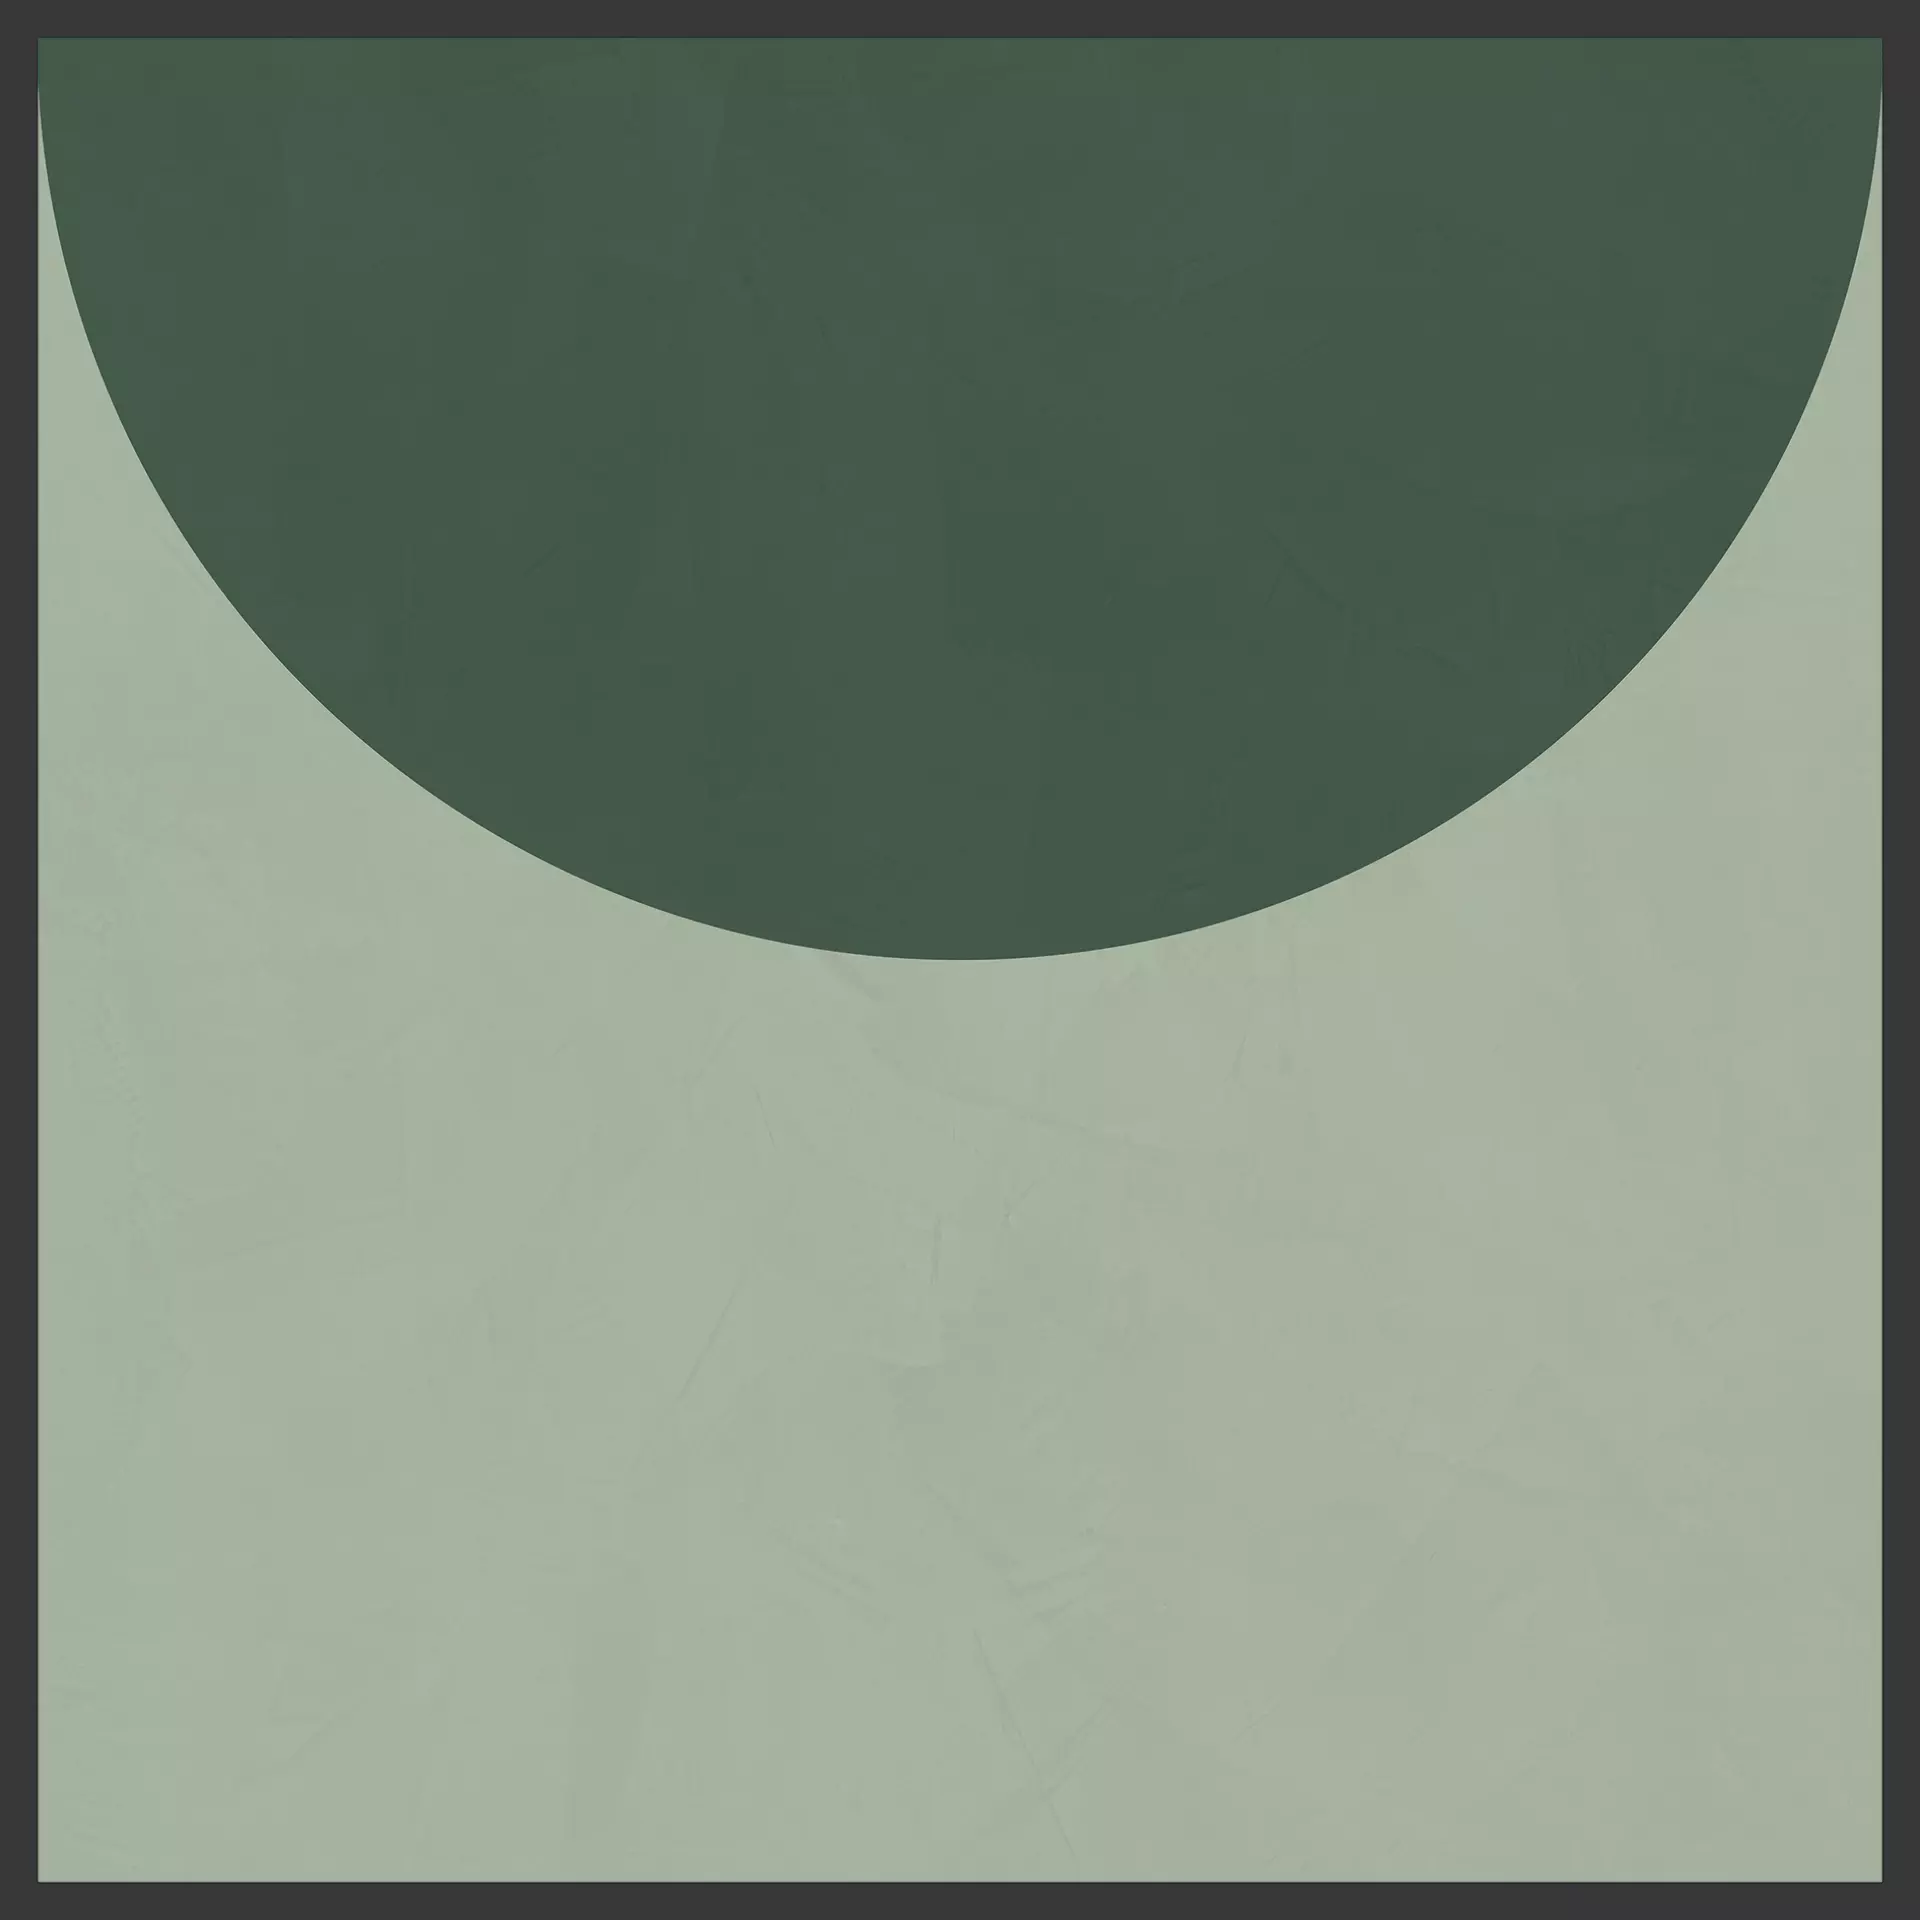 Cedit Policroma Lichene – Conifera Naturale – Matt Decor Volta 764136 120x120cm rectified 6mm